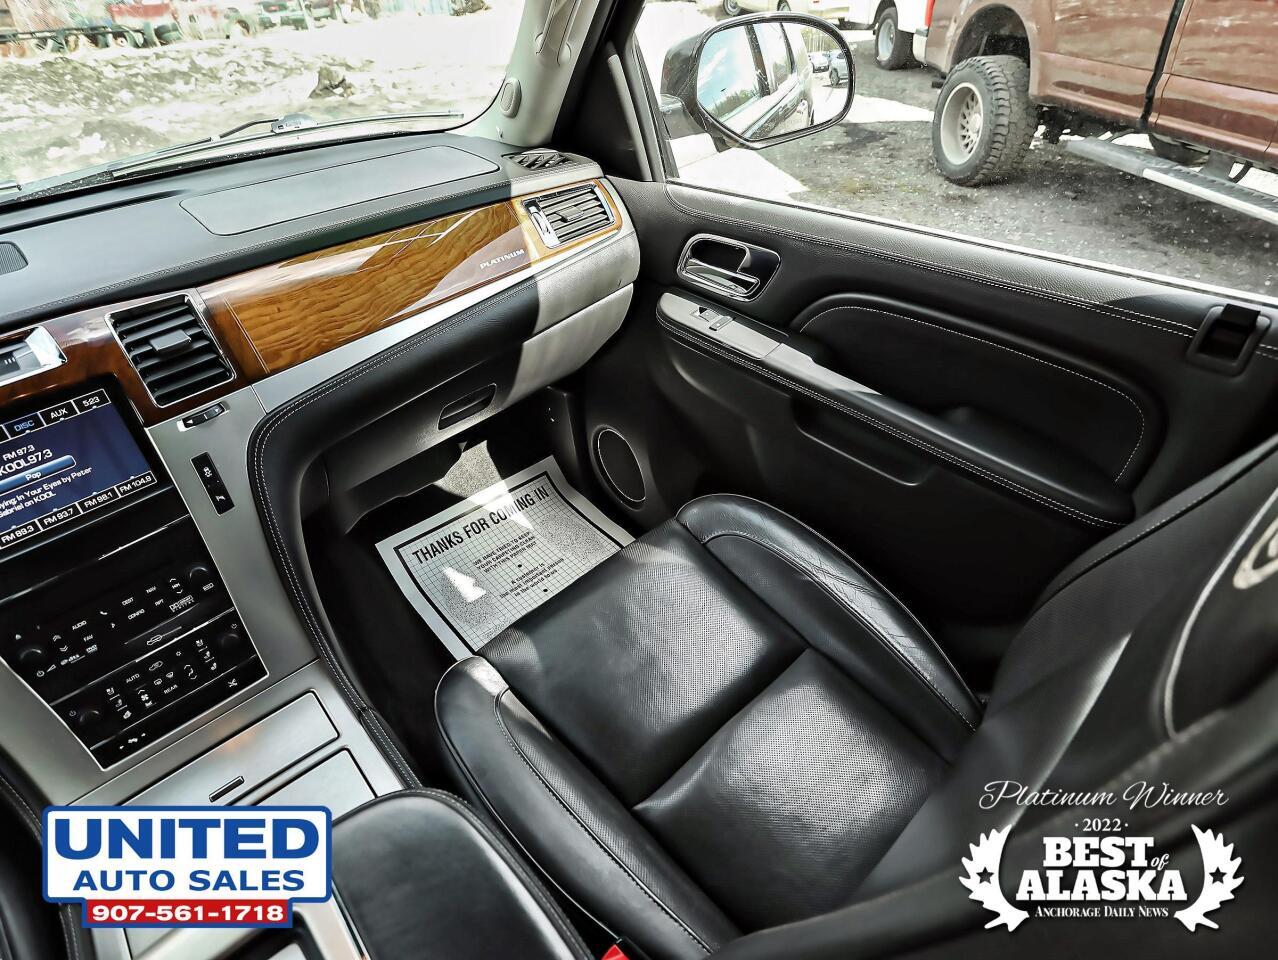 2013 Cadillac Escalade ESV Platinum Edition AWD 4dr SUV 71